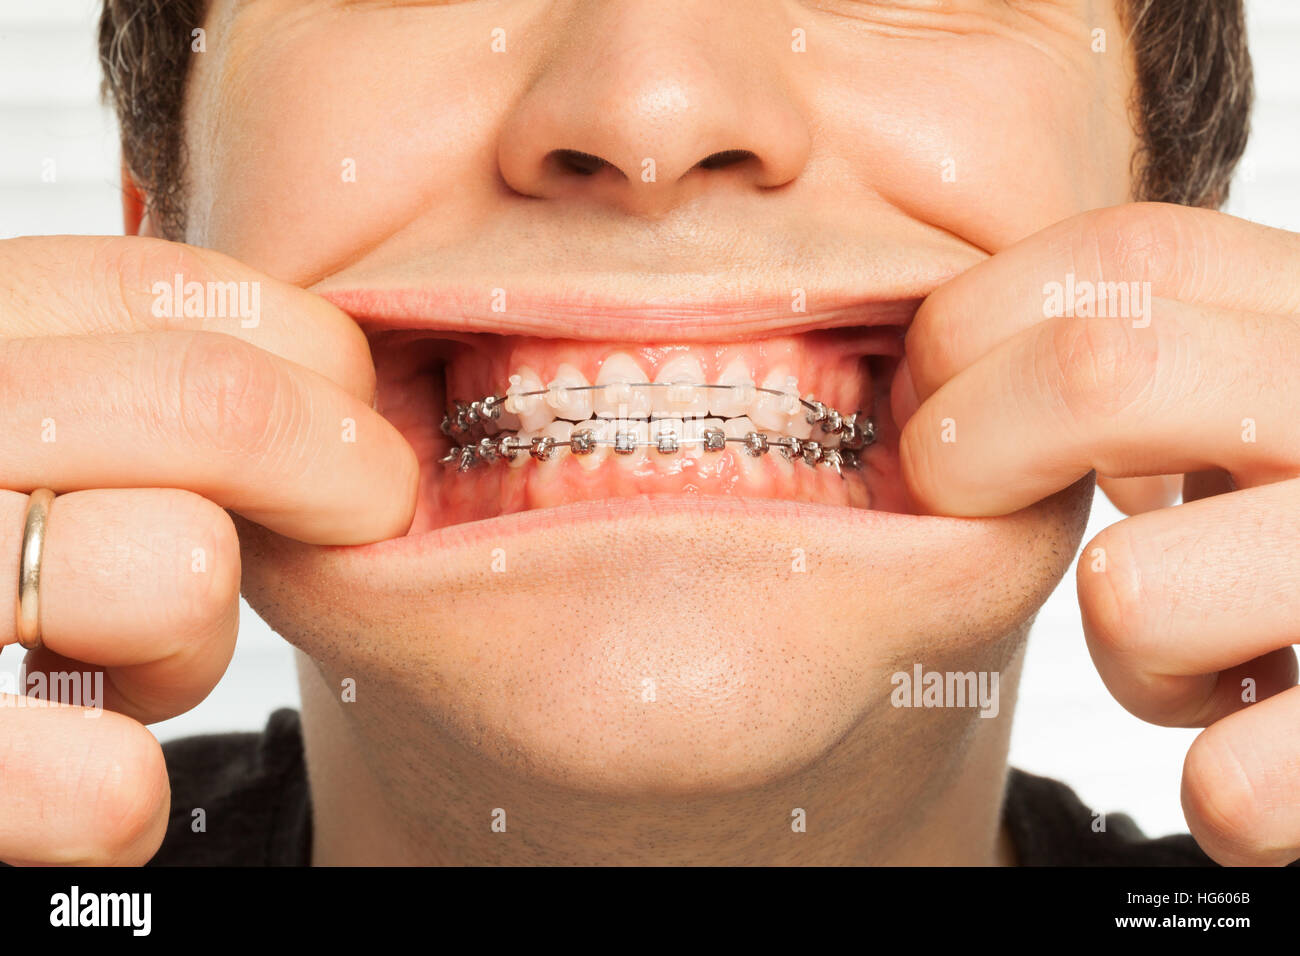 Ritratto di close-up di uomo che mostra le bretelle dentali Foto Stock